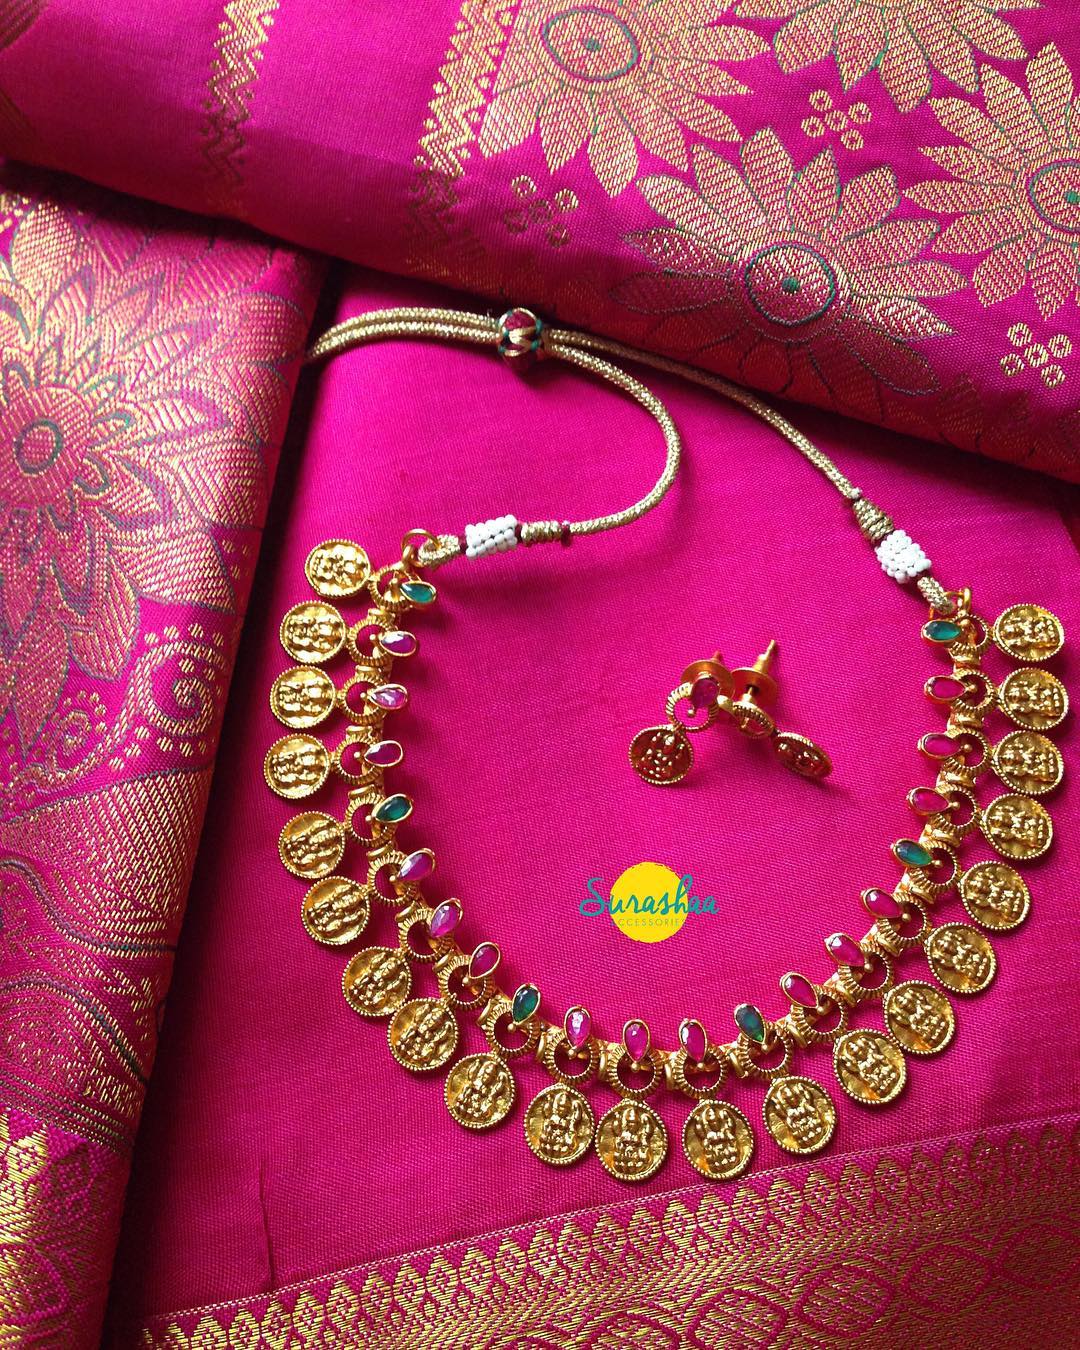 surashaa jewelleries